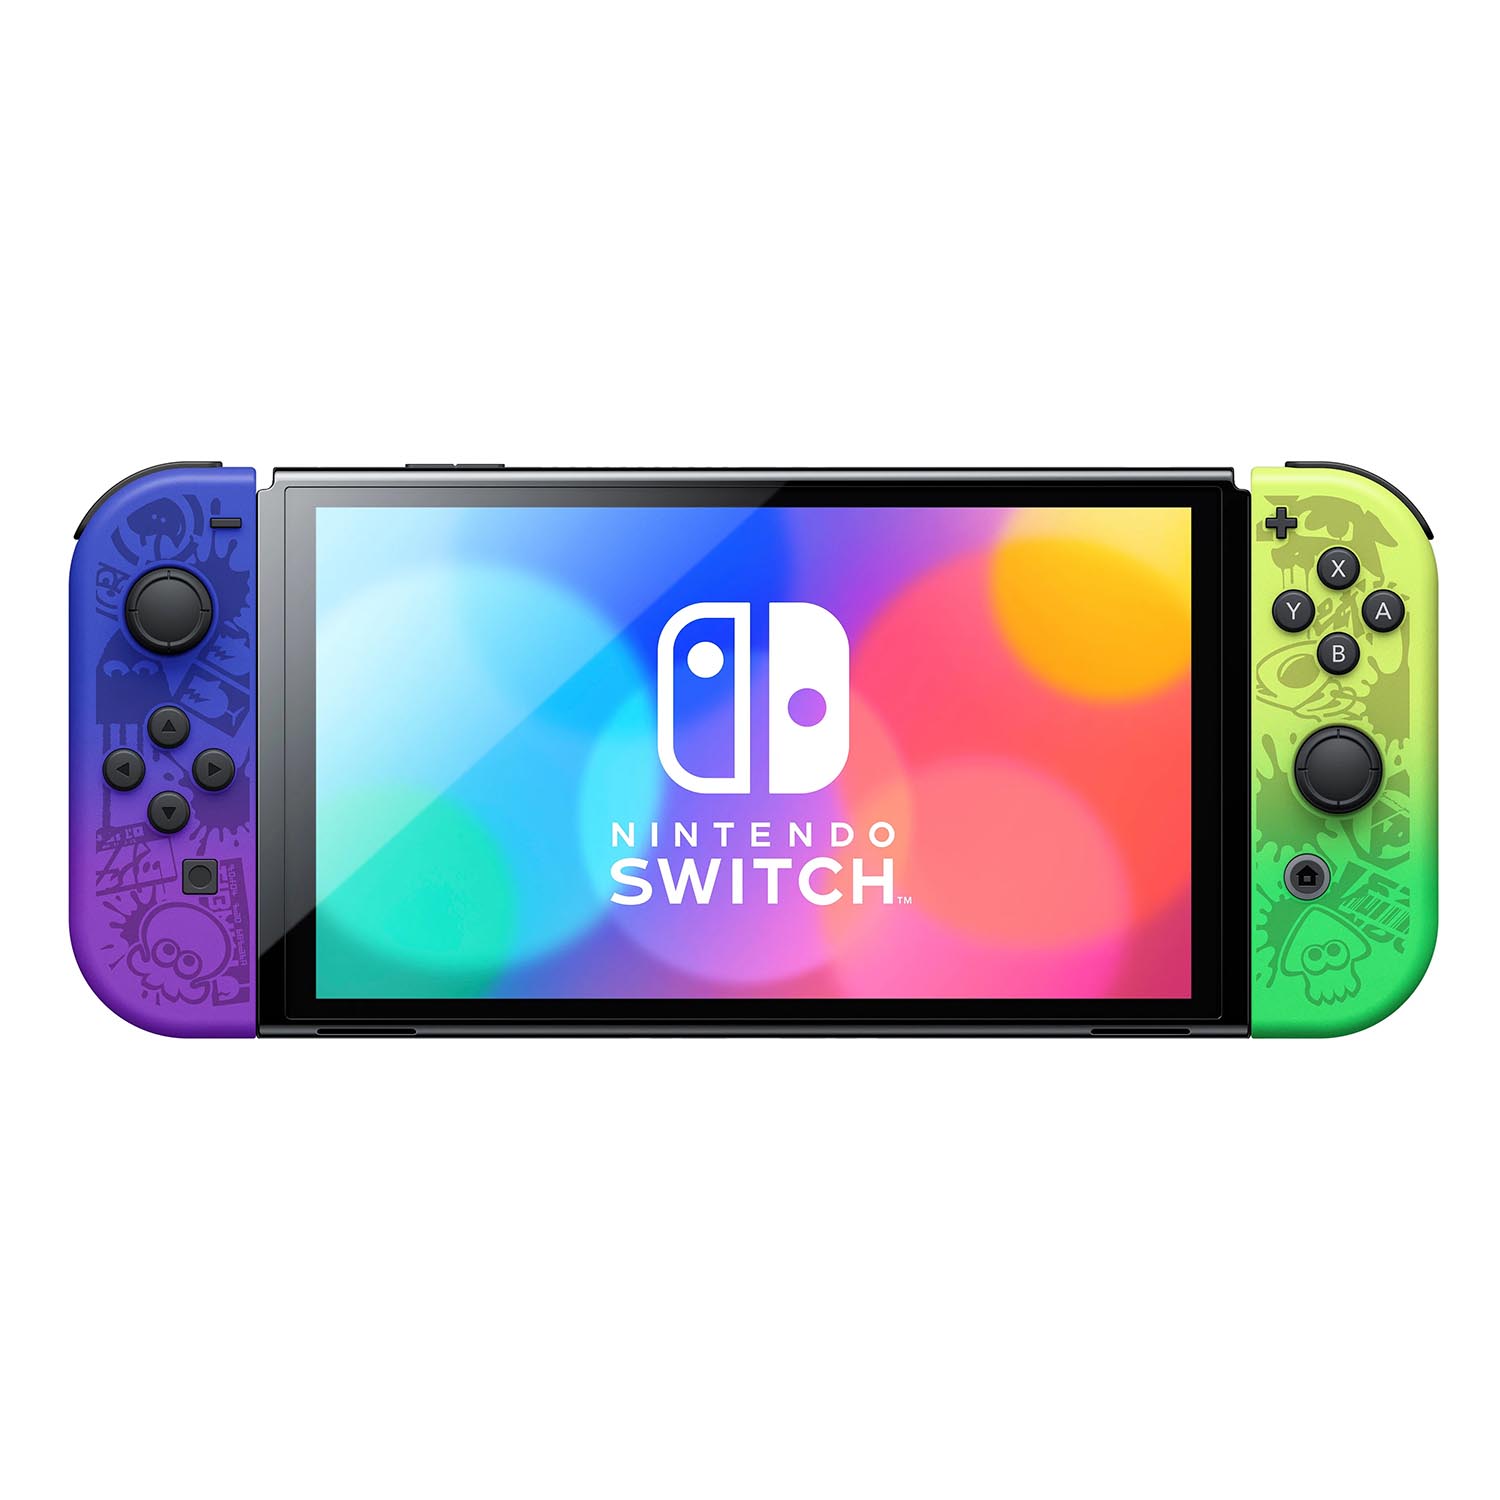 Игровая консоль Nintendo Switch OLED, Splatoon 3 Edition prestigio wize pmt 1157 с 7 дюймовым сенсорным экраном 4g pmt1157 4g cru с режимом отключения мощности